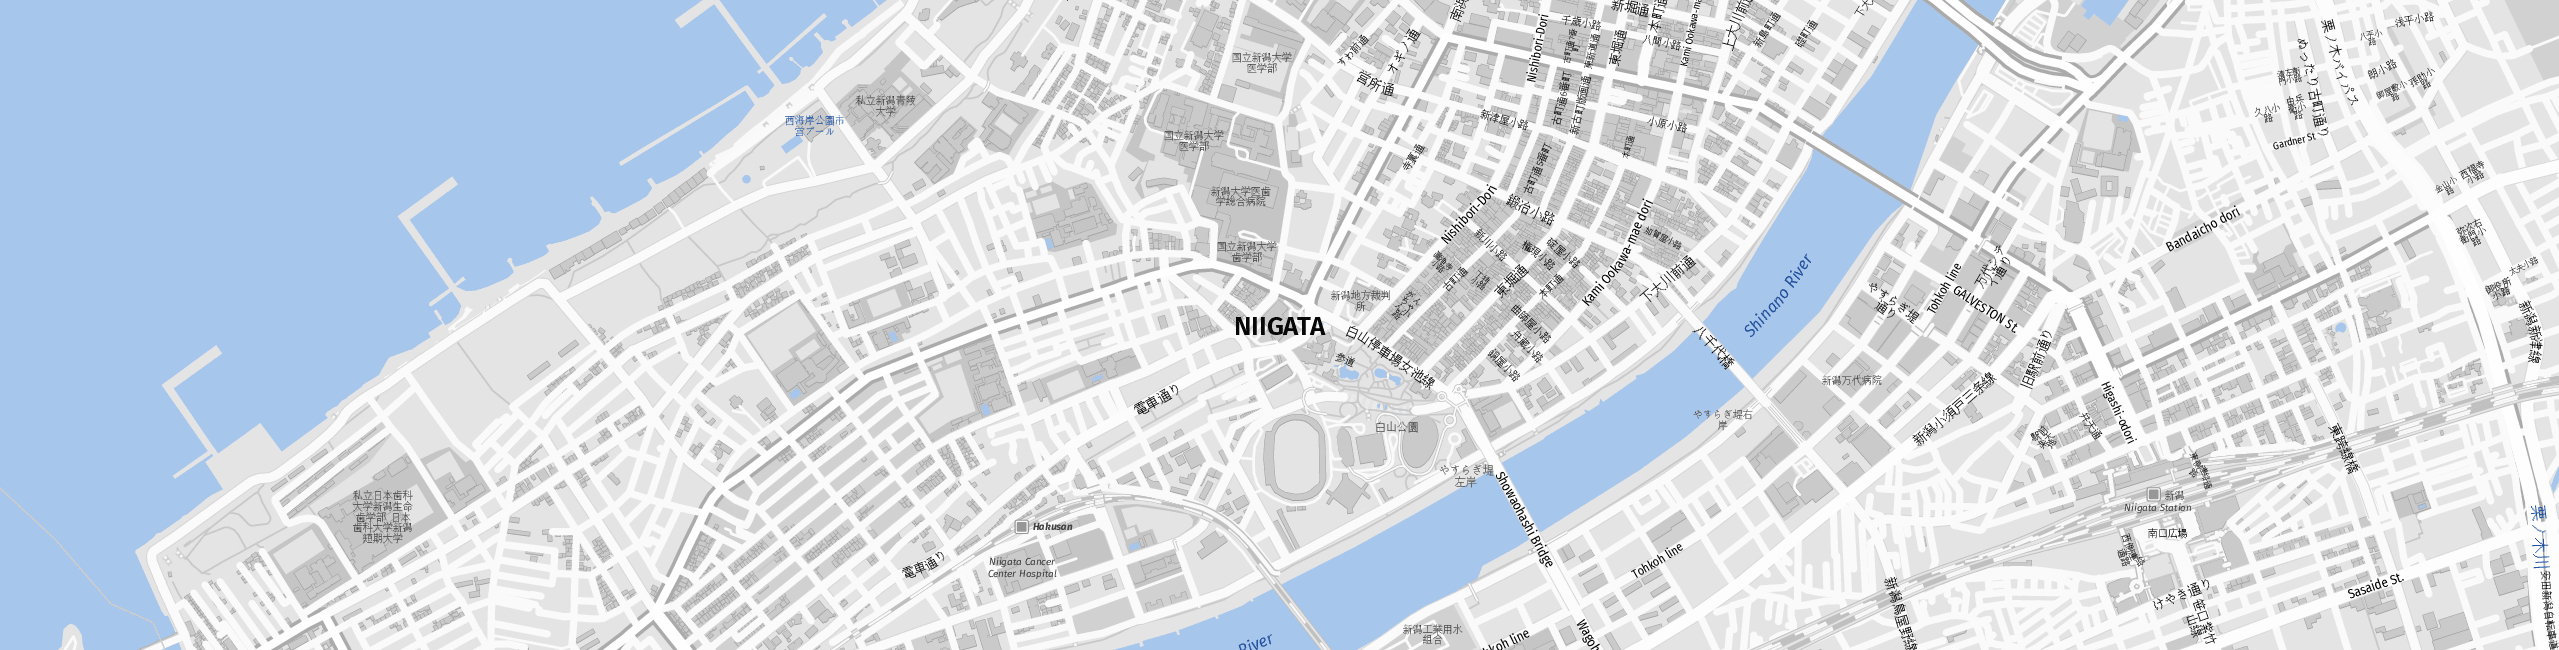 Stadtplan Niigata zum Downloaden.